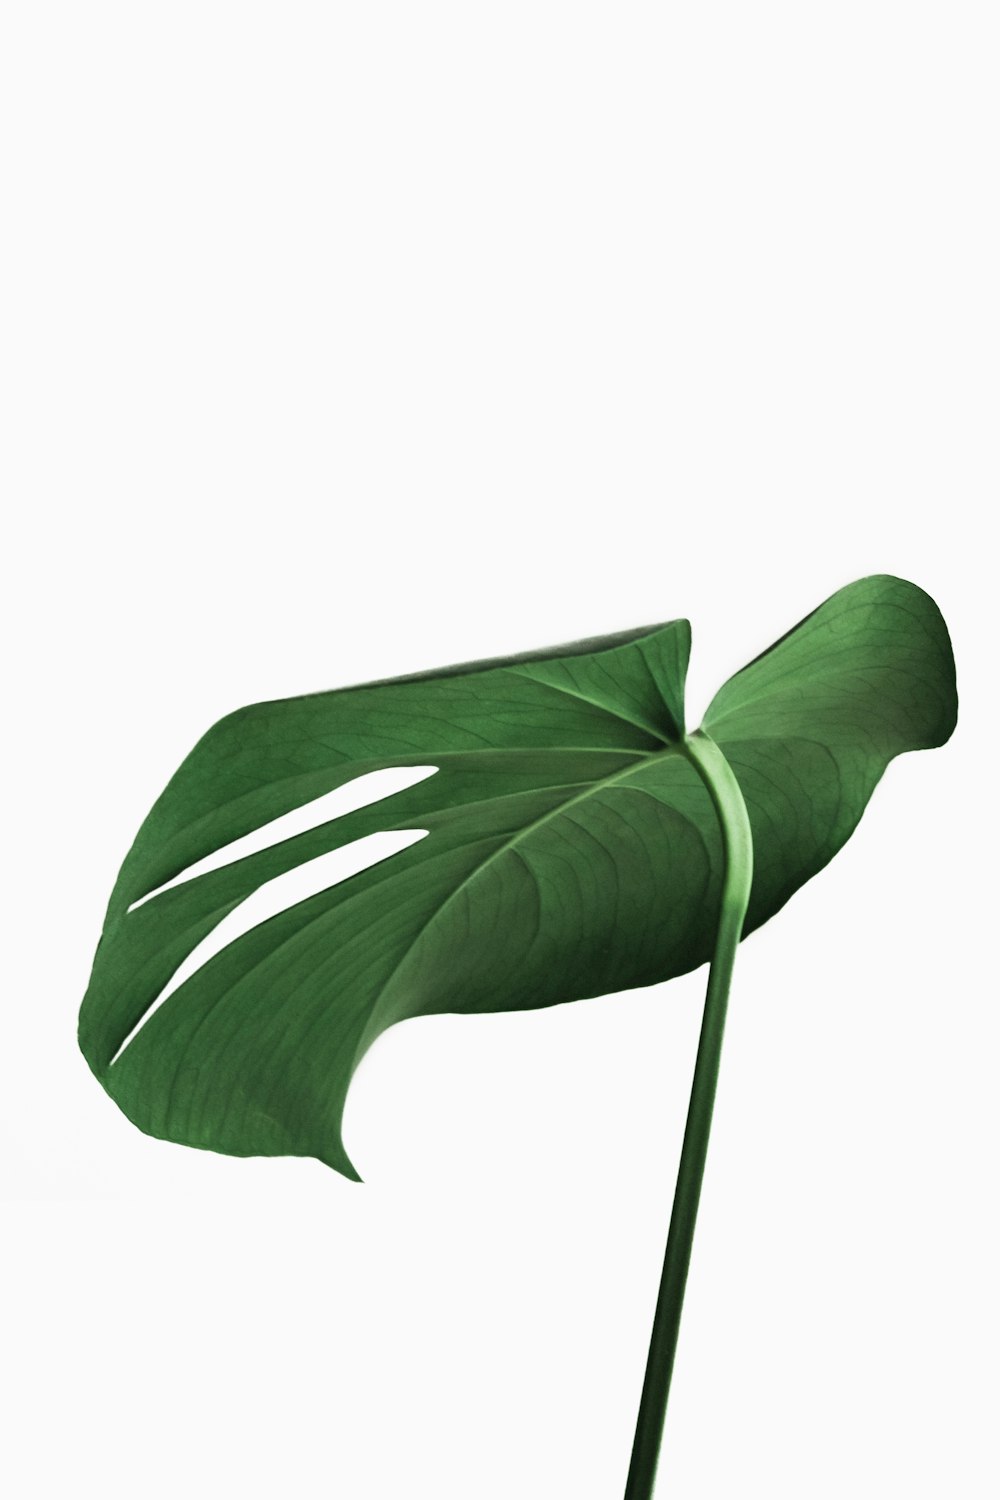 plante à feuilles vertes sur fond blanc